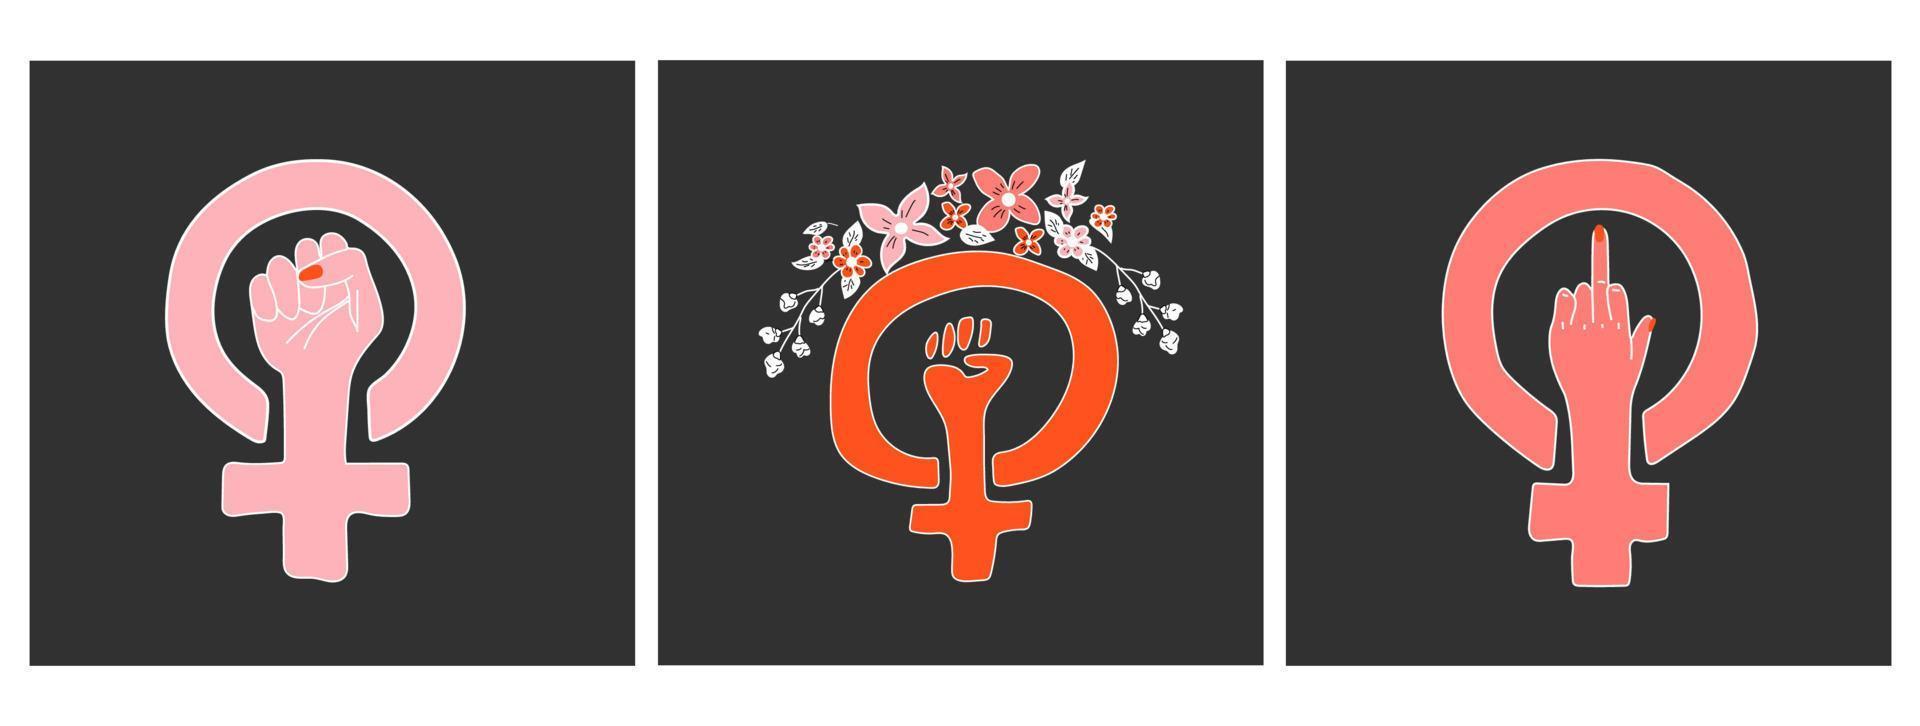 conjunto de três vetores do símbolo do feminismo. gênero feminino de poder feminino. esboço desenhado à mão.